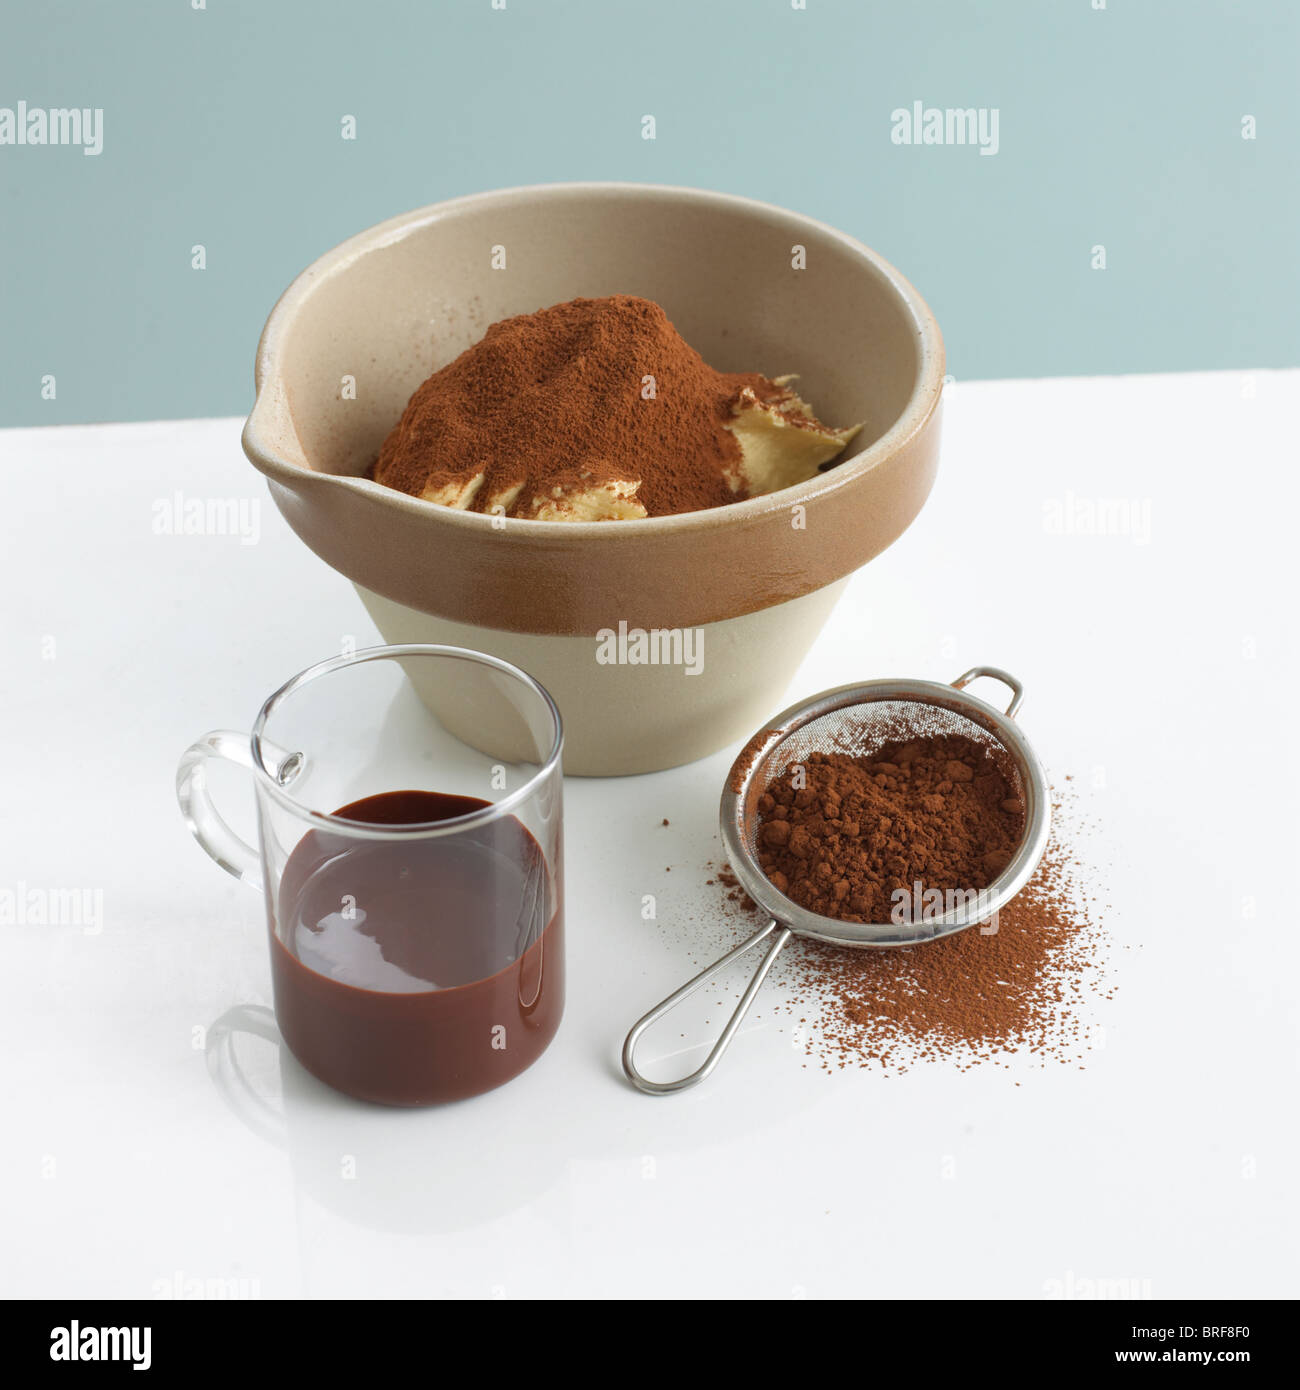 Pudding-Schüssel mit Butter und Kakao Pulver neben Glas geschmolzene Schokolade und Sieb von Schokolade Pulver Stockfoto